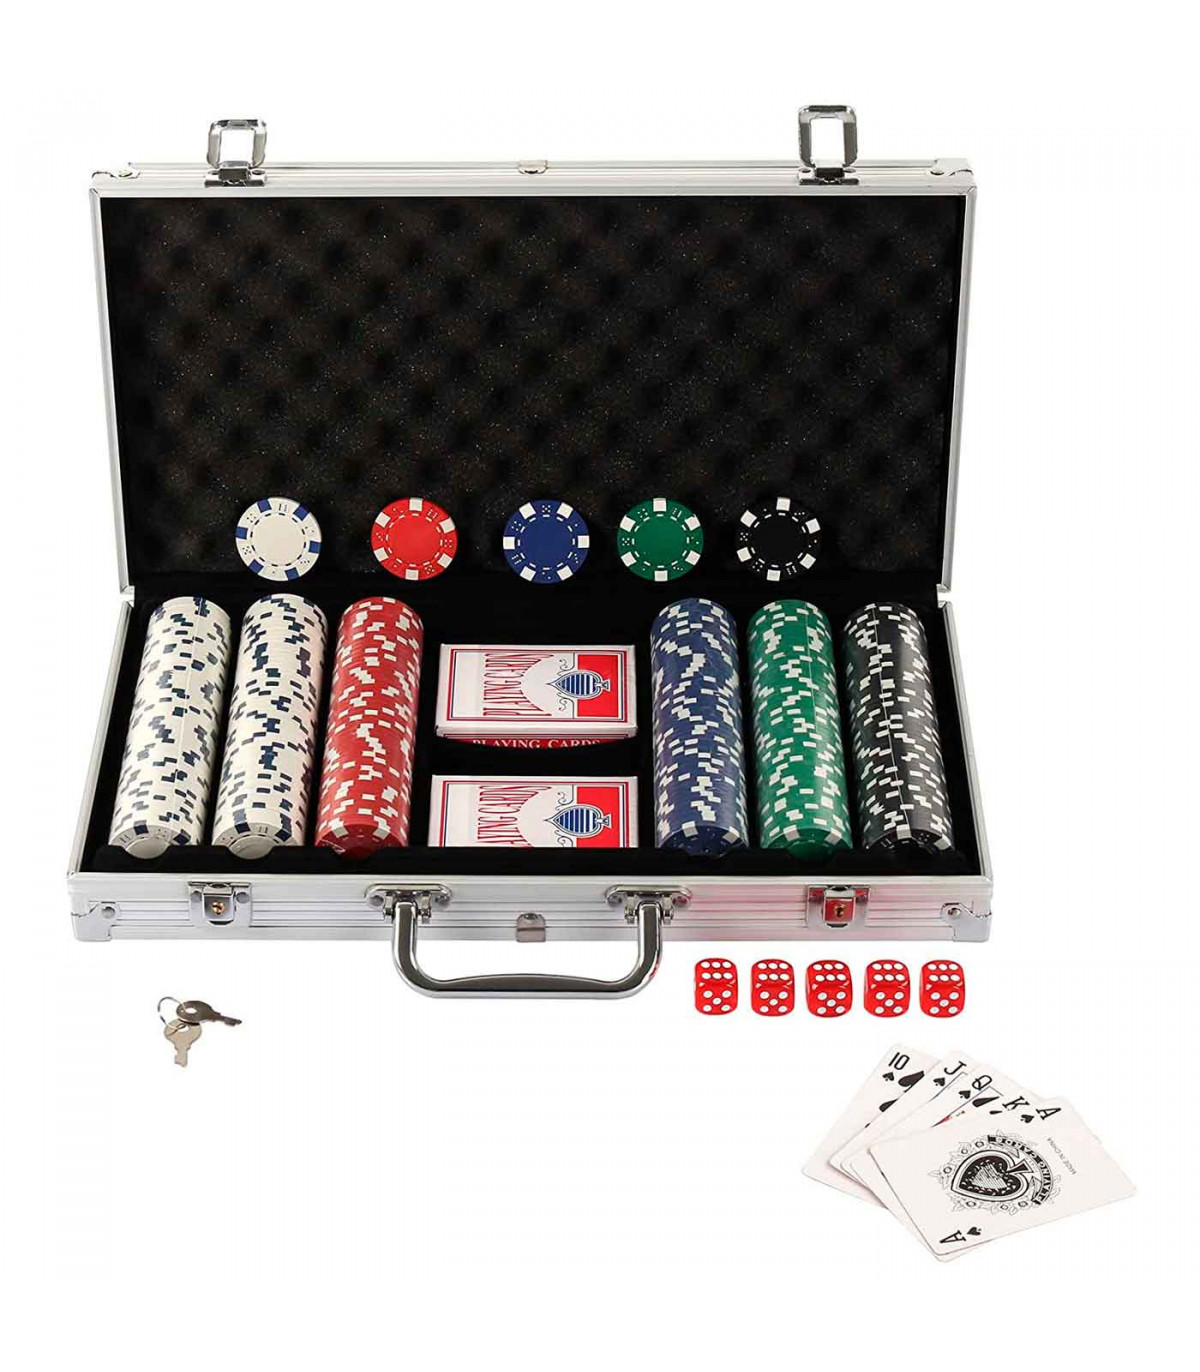 Hambre Plano moneda Tradineur - Juego de póker con 300 piezas - Fichas de 11,5 gramos, 2  Barajas de Cartas - Incluye maletín de metal.